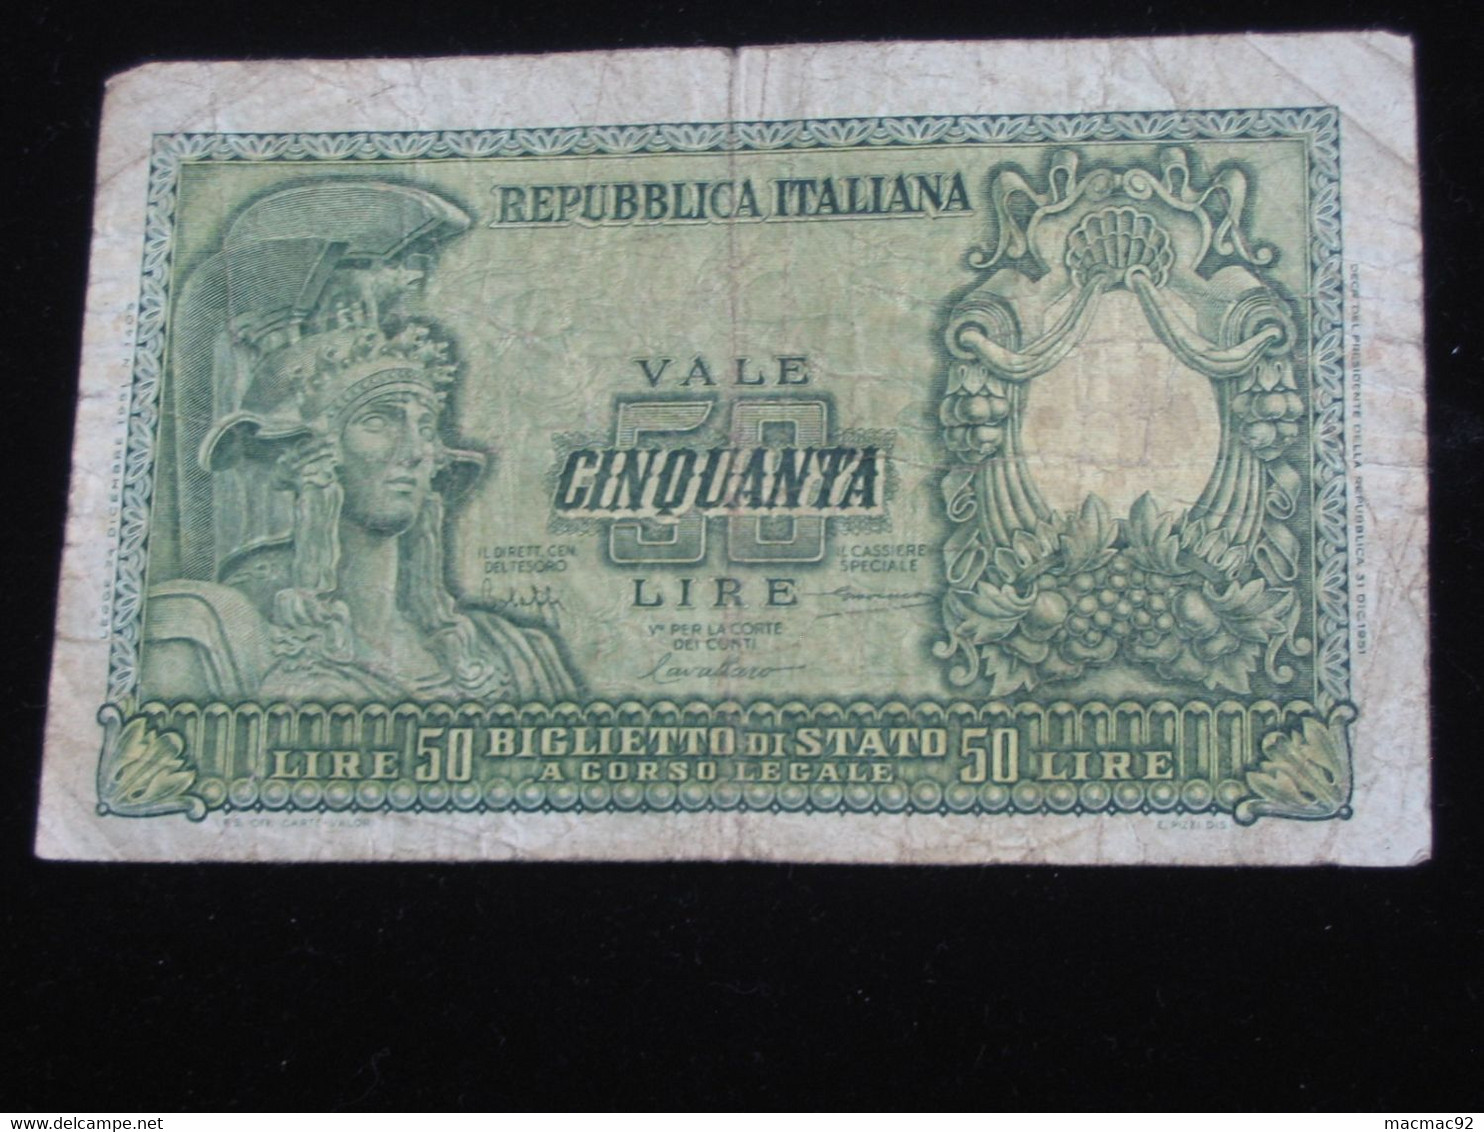 Italie - Italia 50 Lire -1951 - Biglietto Di Stato A Corso Legale    **** EN ACHAT IMMEDIAT **** - Regno D'Italia – Other